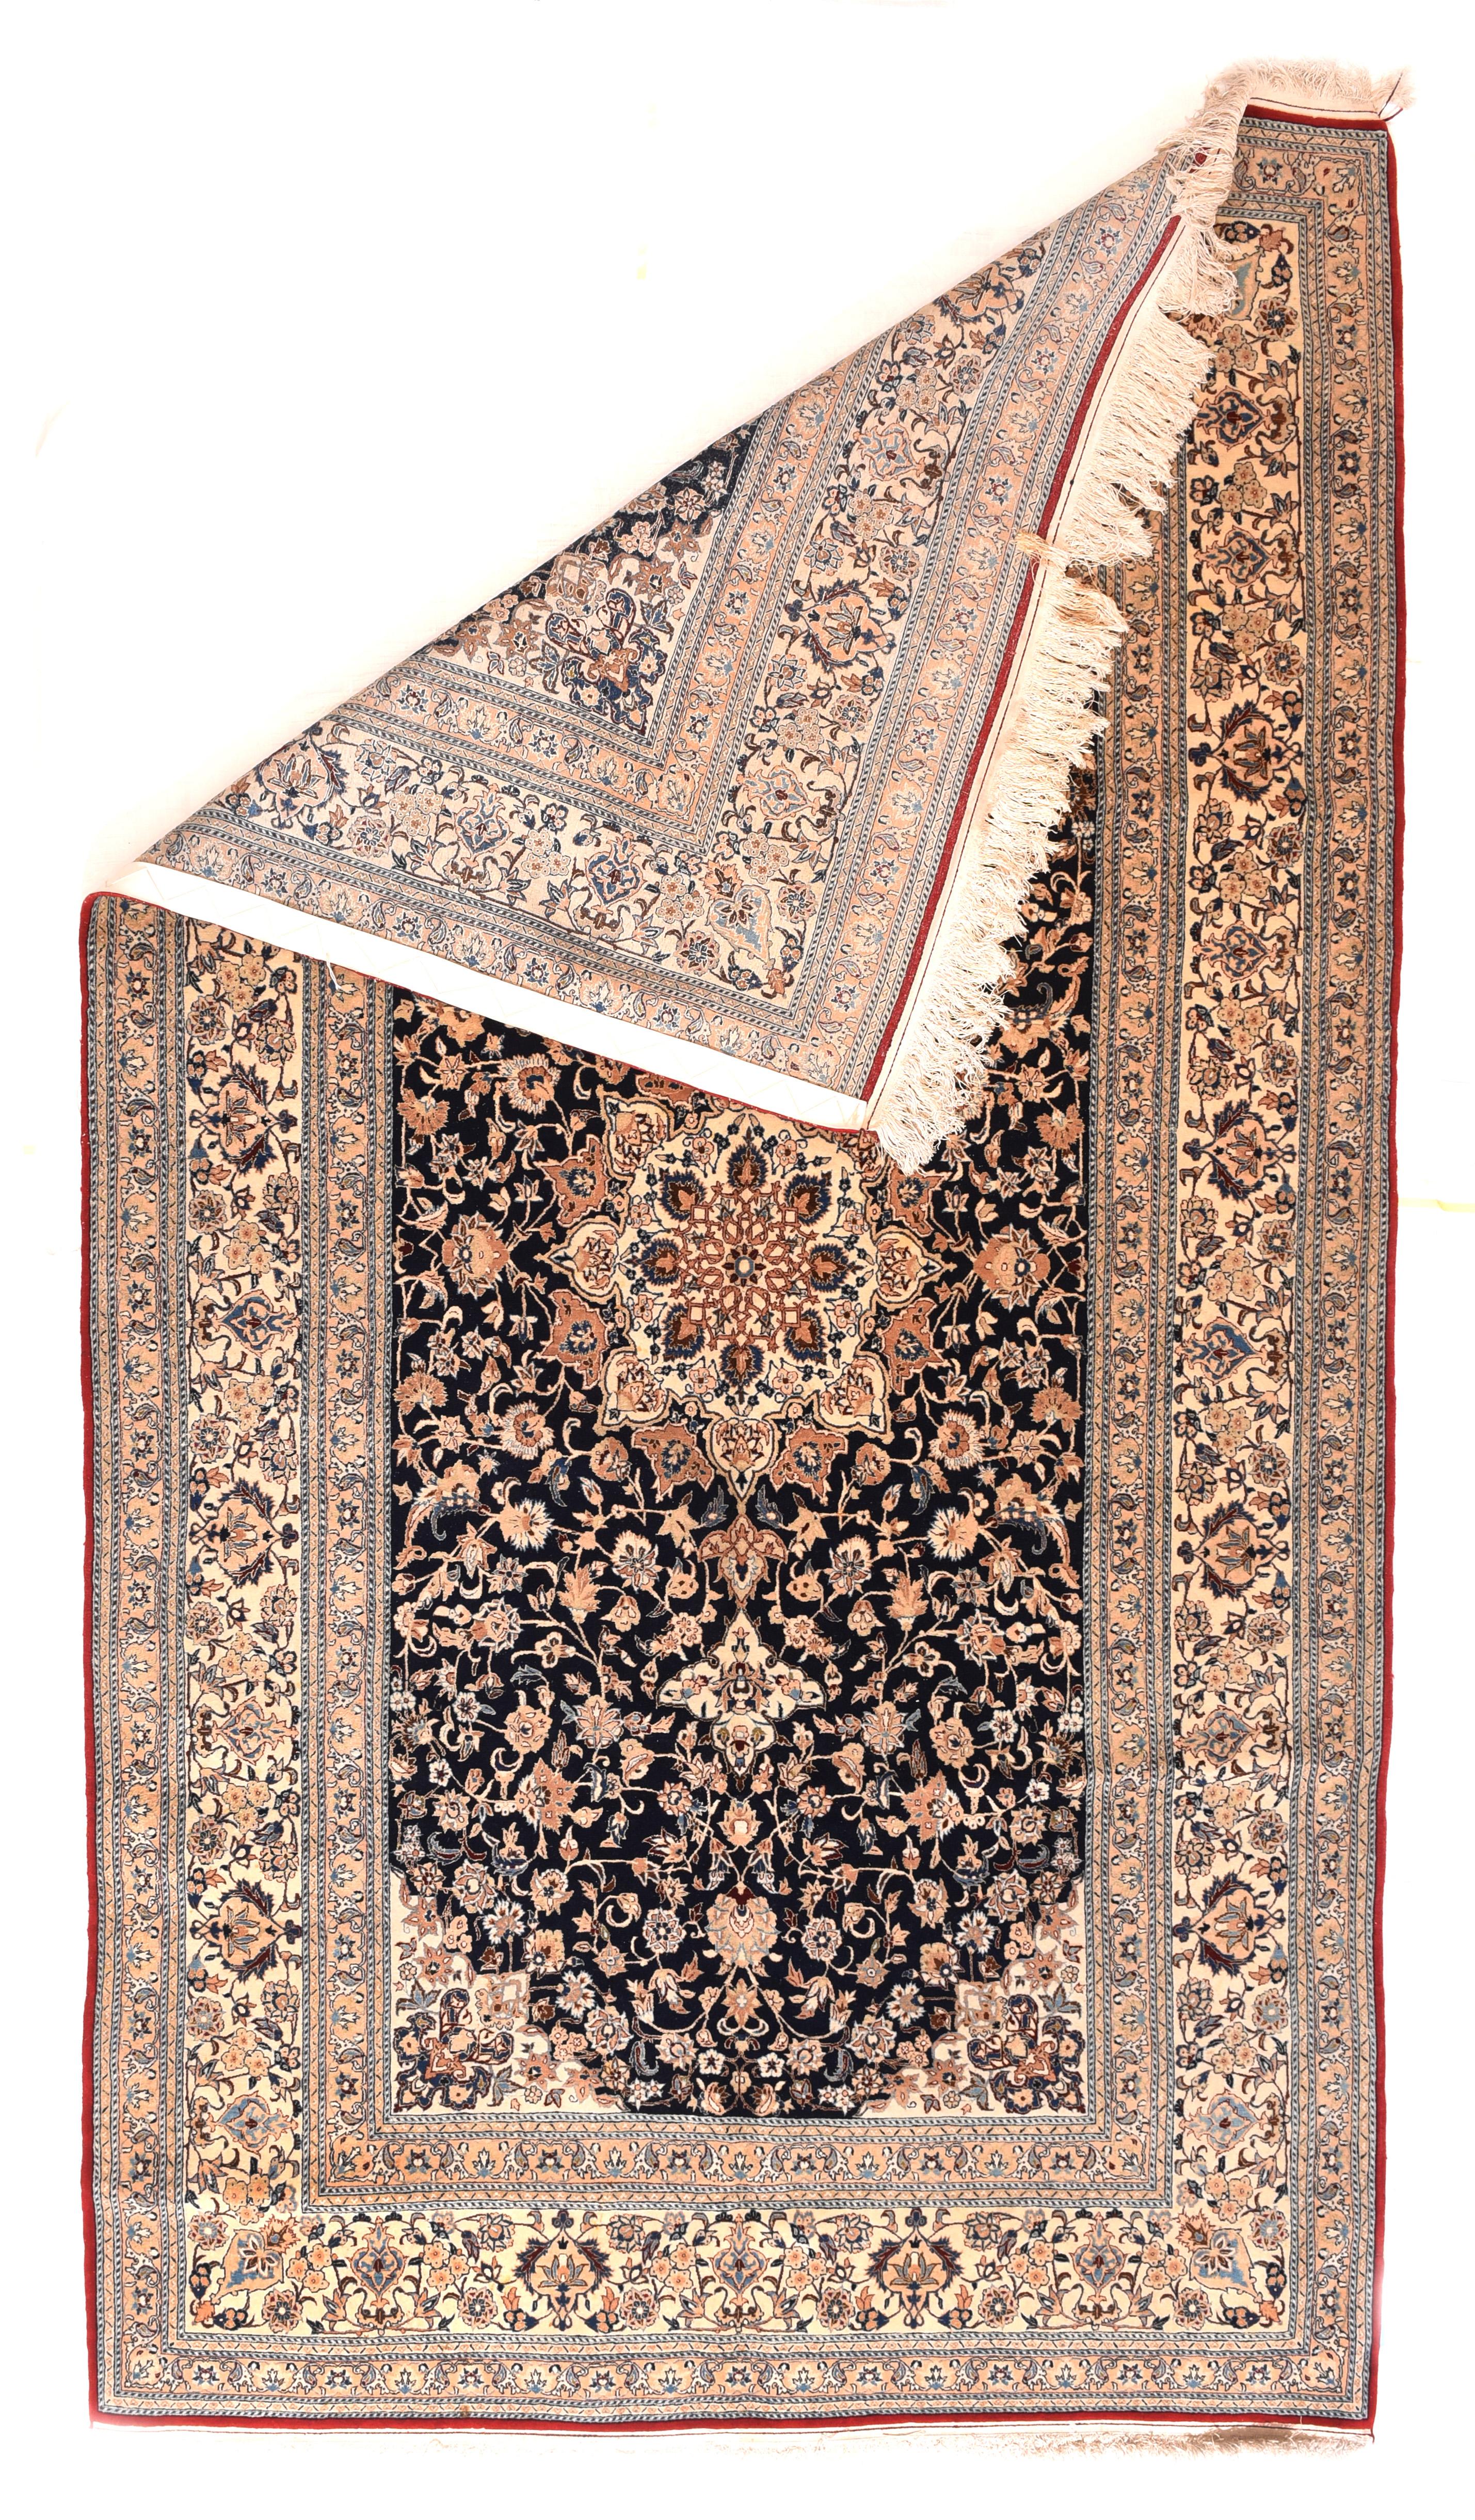 Les tapis Nain sont fabriqués à l'aide du nœud persan et comptent généralement entre 300 et 700 nœuds par pouce carré. Le poil est généralement de la laine de très haute qualité, coupée court, et la soie est souvent utilisée pour souligner les